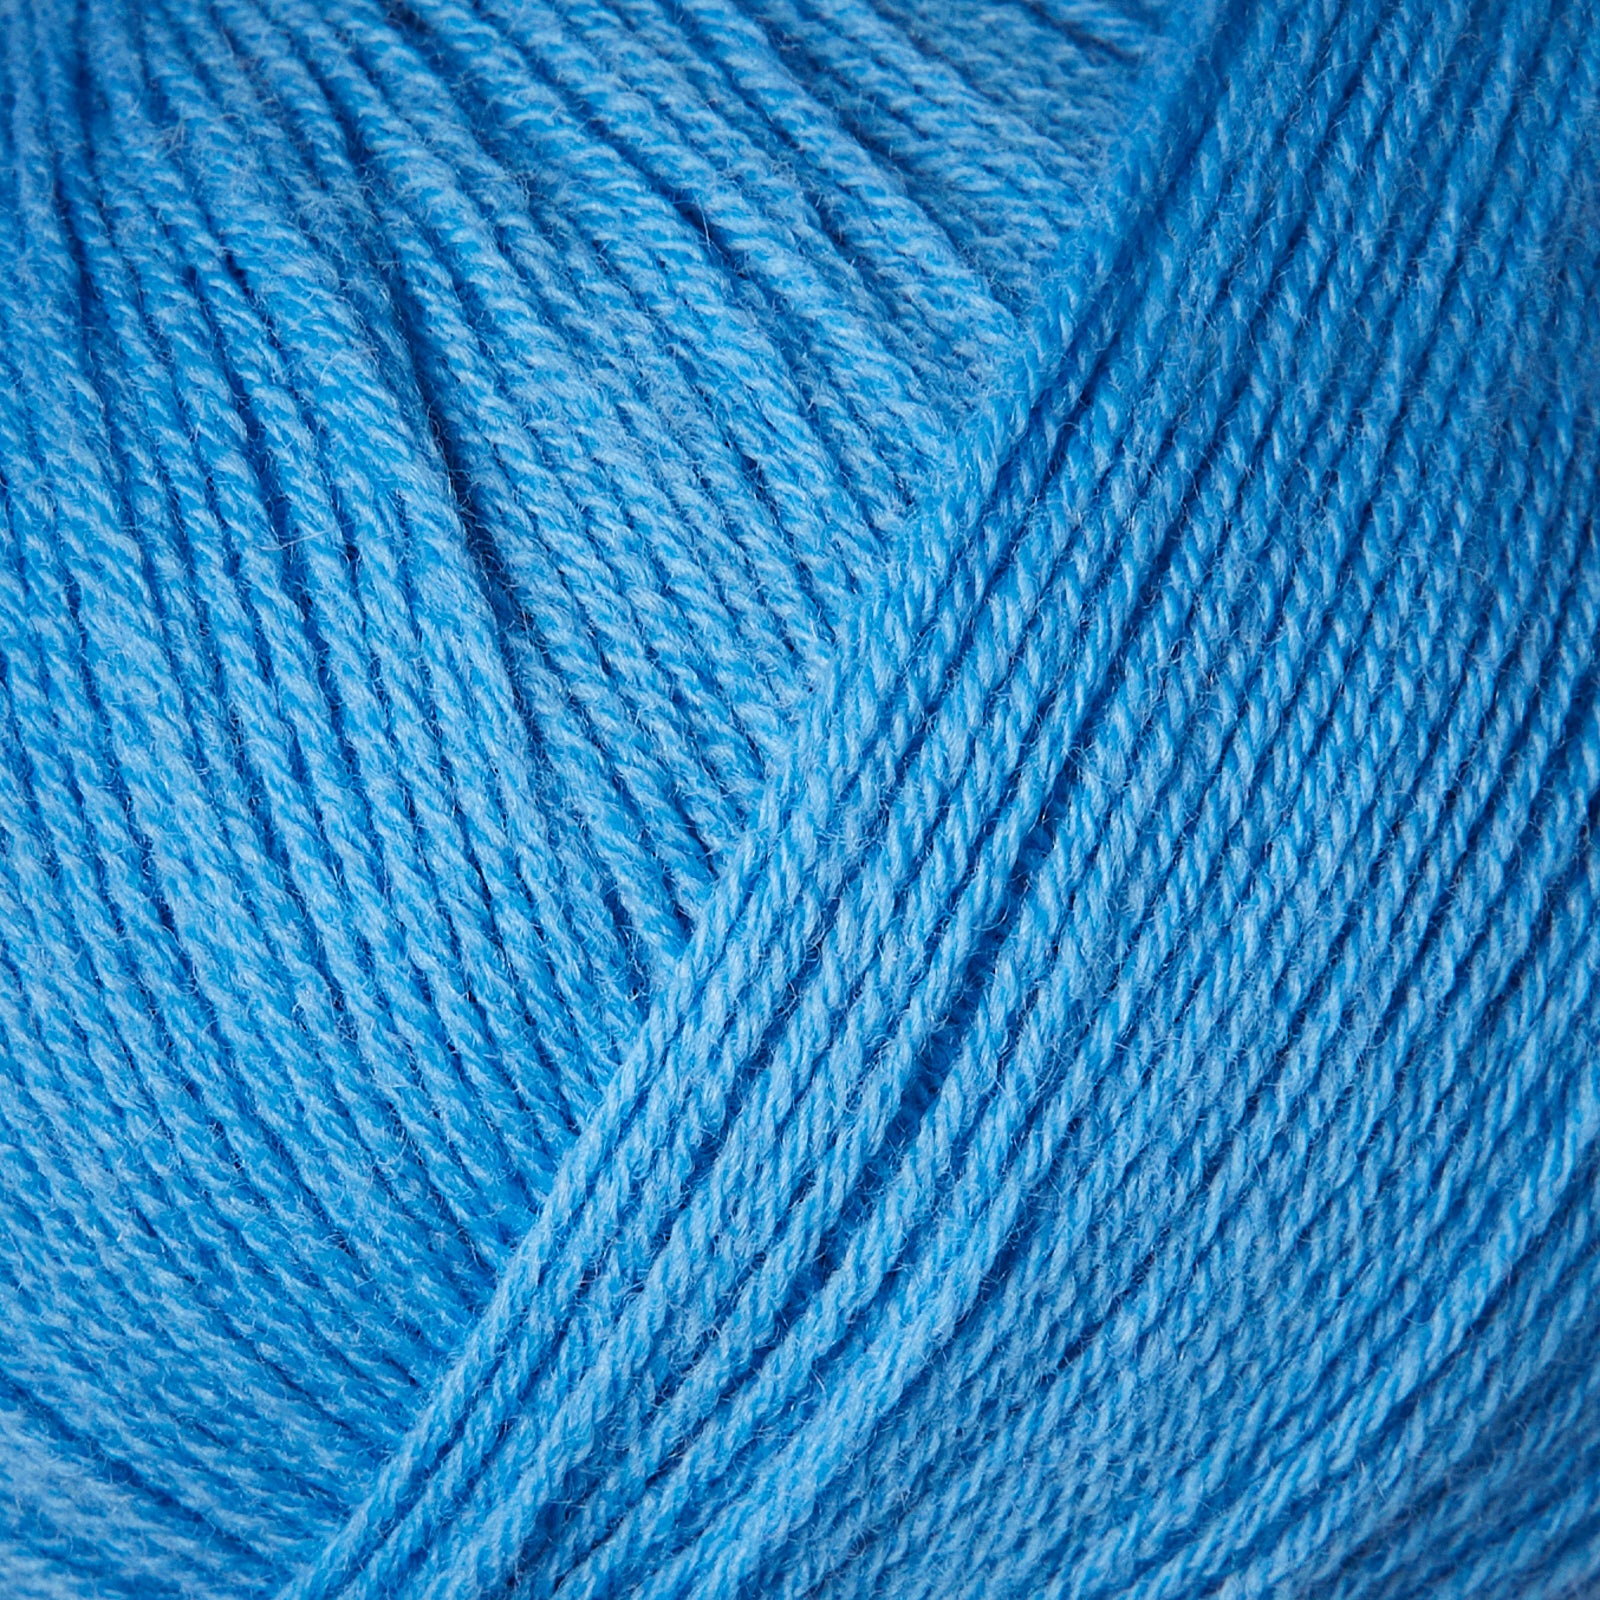 Knitting for Olive Merino - Poppy Blue